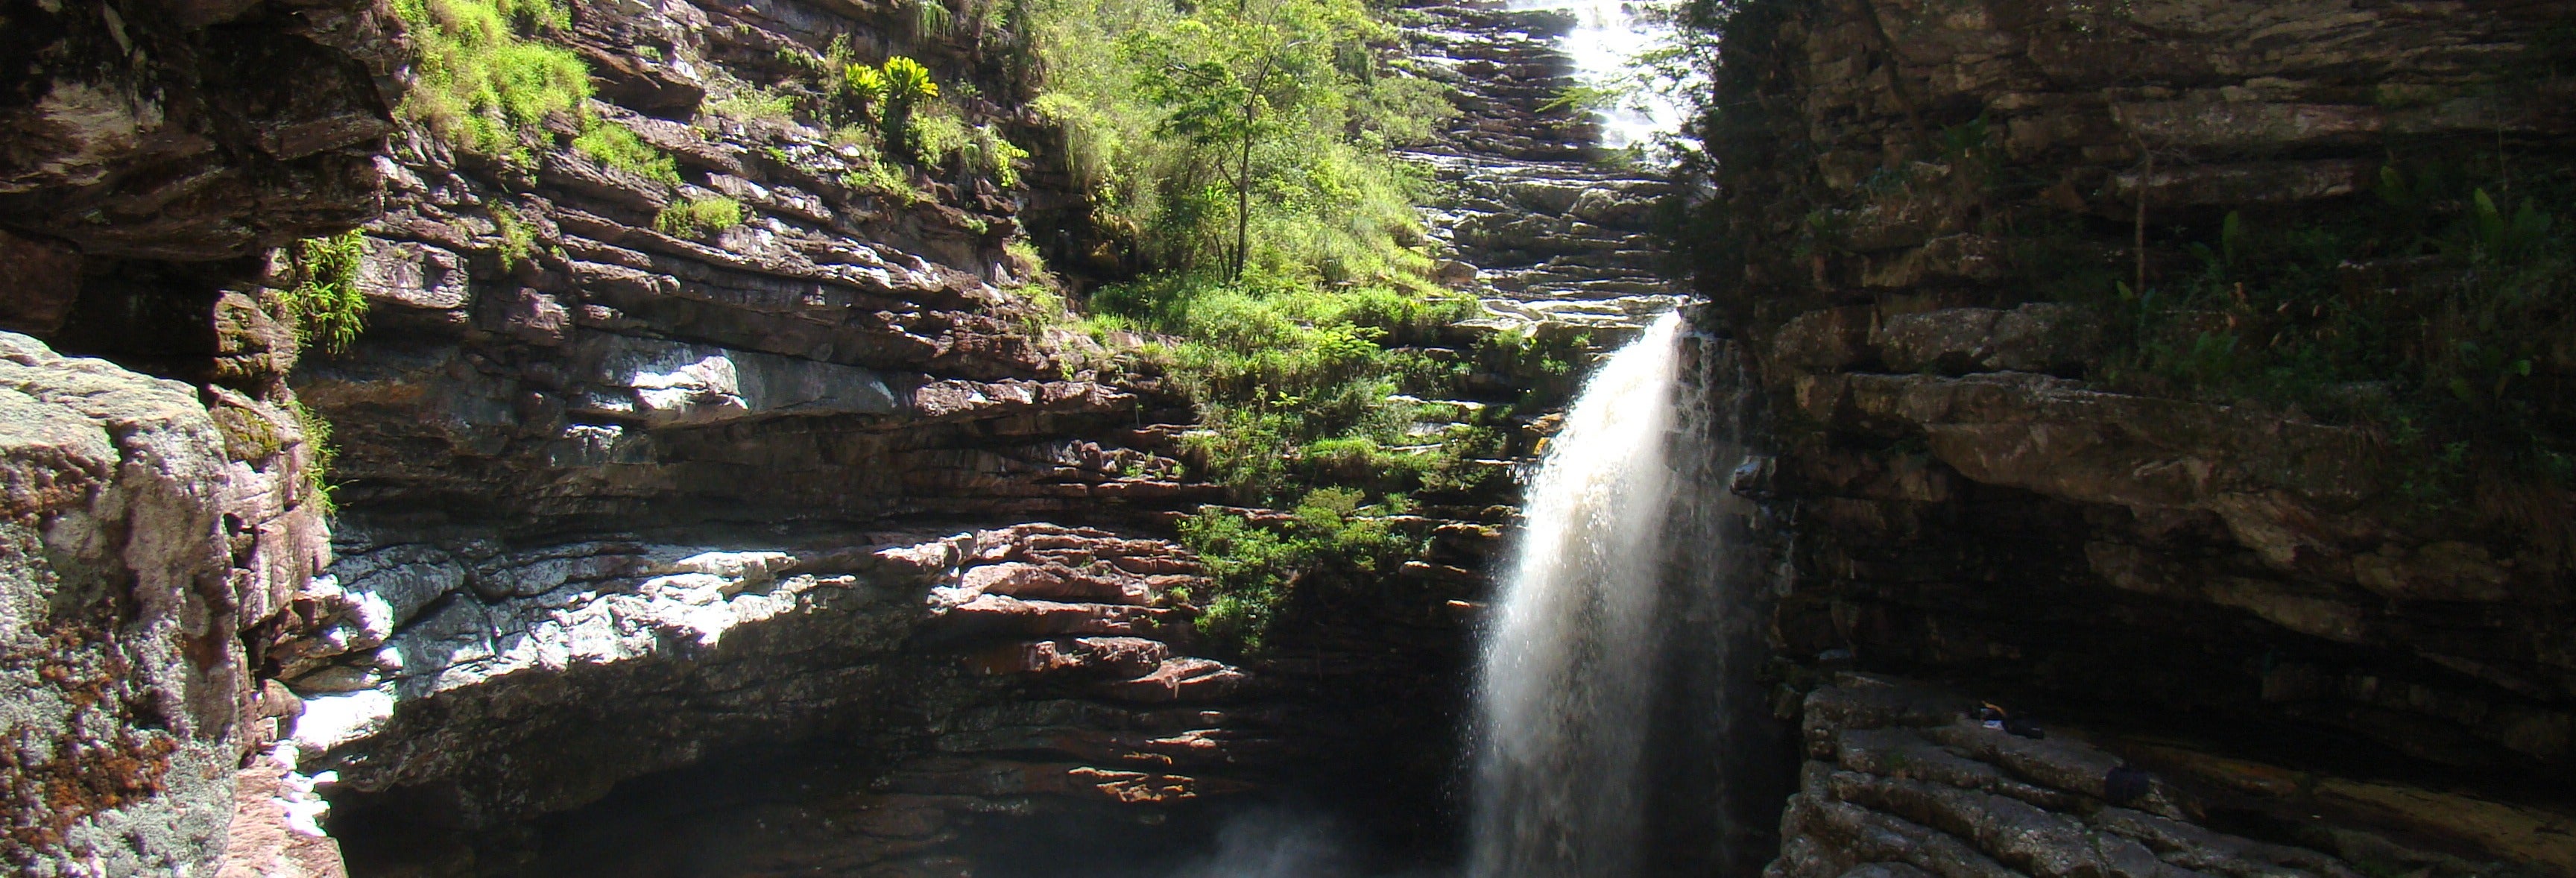 Excursão à Cachoeira do Sossego